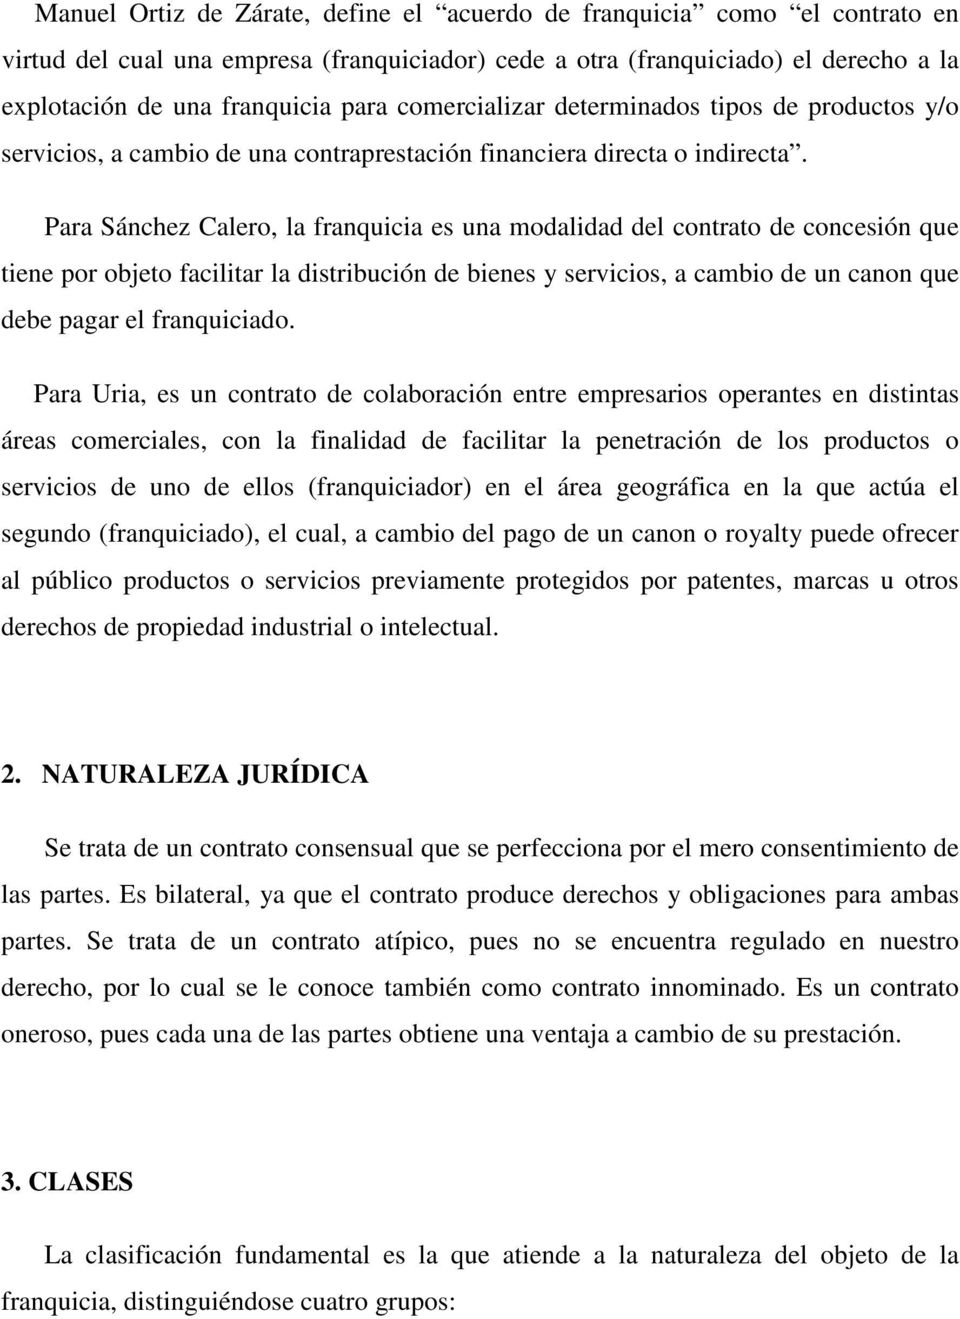 Para Sánchez Calero, la franquicia es una modalidad del contrato de concesión que tiene por objeto facilitar la distribución de bienes y servicios, a cambio de un canon que debe pagar el franquiciado.